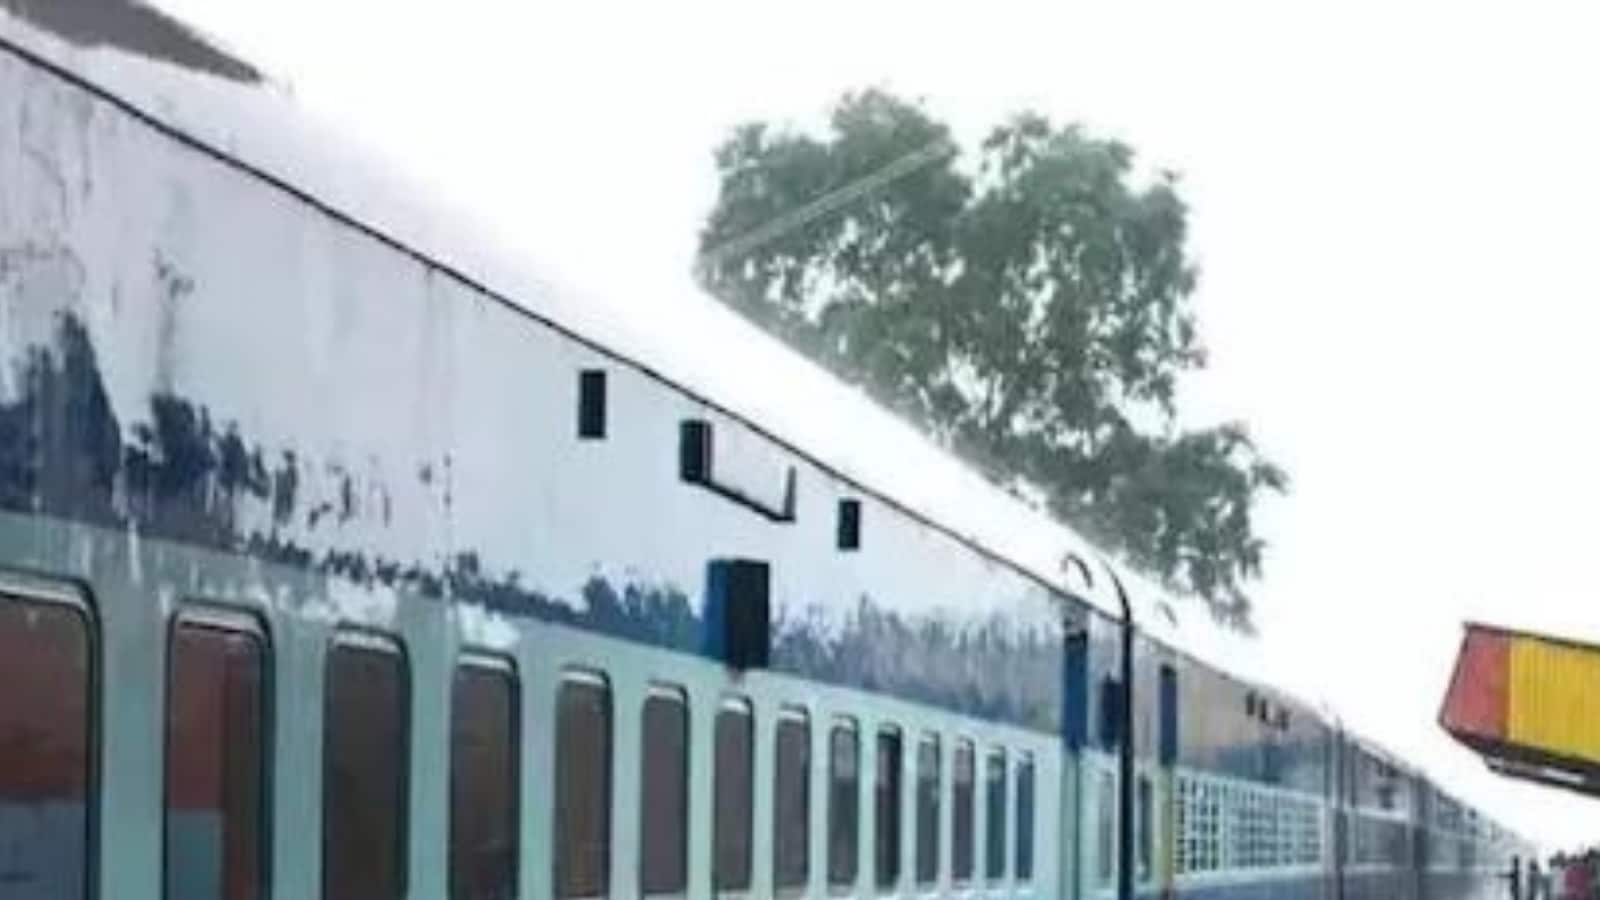 बिहार की 8 ट्रेनें 16 मई तक रद्द, जानिए क्या है वजह- 8 trains of Bihar canceled till May 16, know the reason